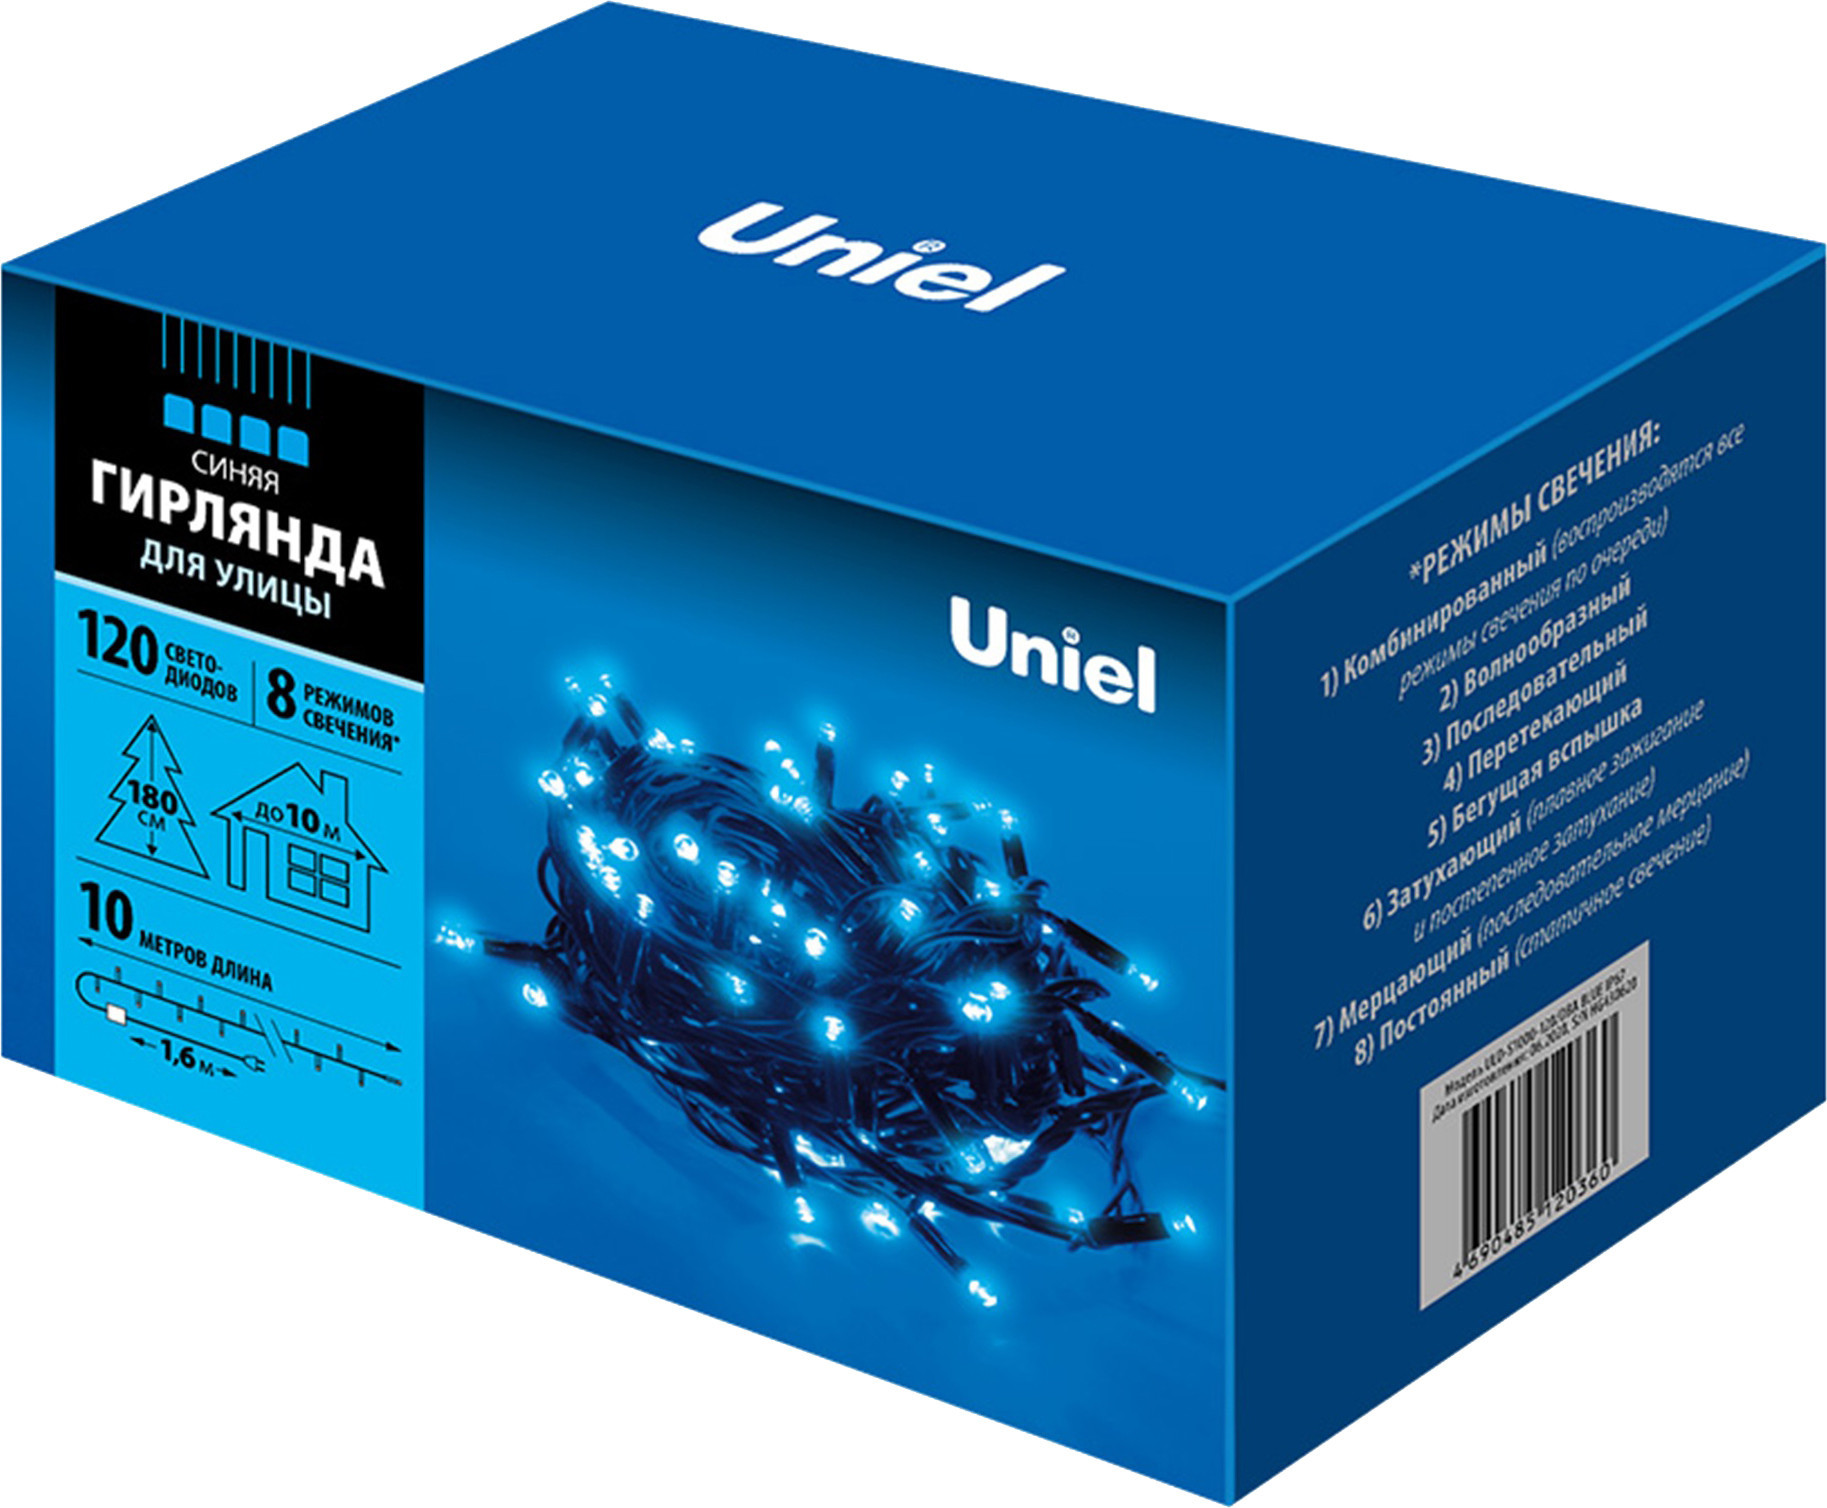 

Новогодняя гирлянда Uniel ULD-S1000-120/DBA IP67 UL-00005262 (синий)